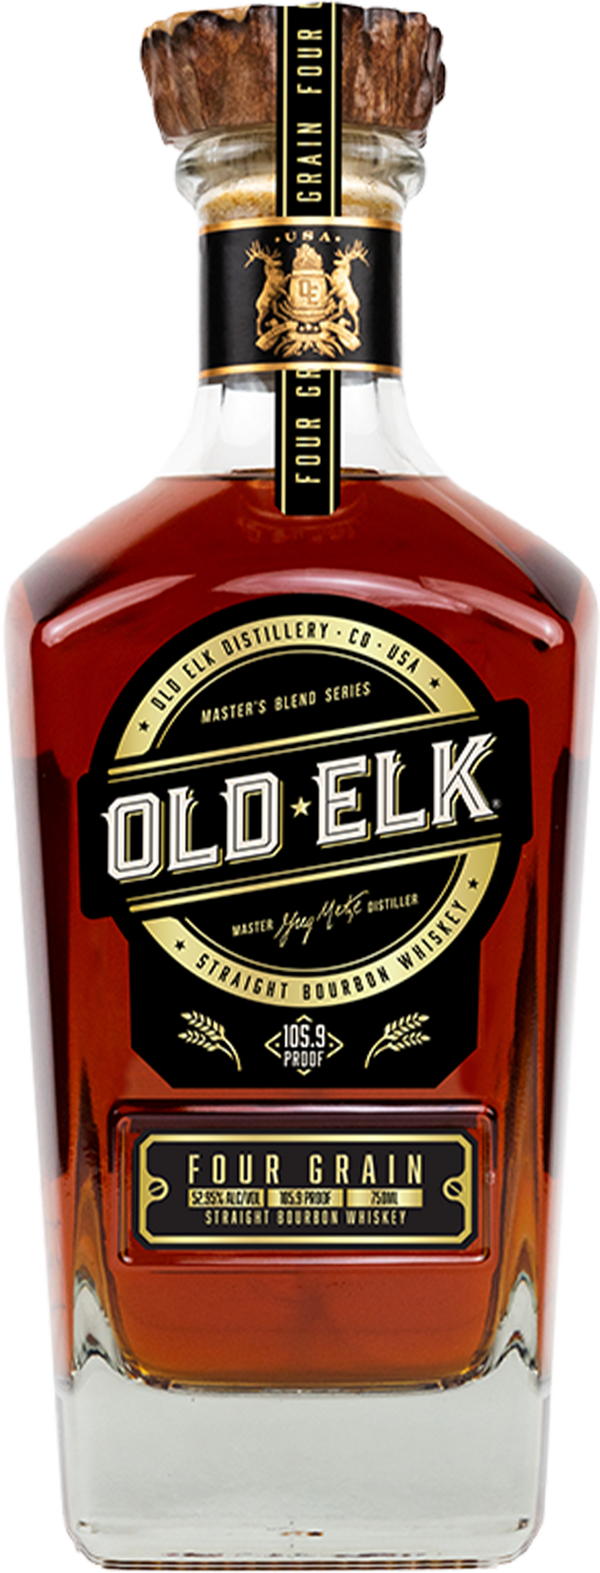 Old Elk Master's Blend Series Four Grain Straight Bourbon Whiskey 105.9 750 ML